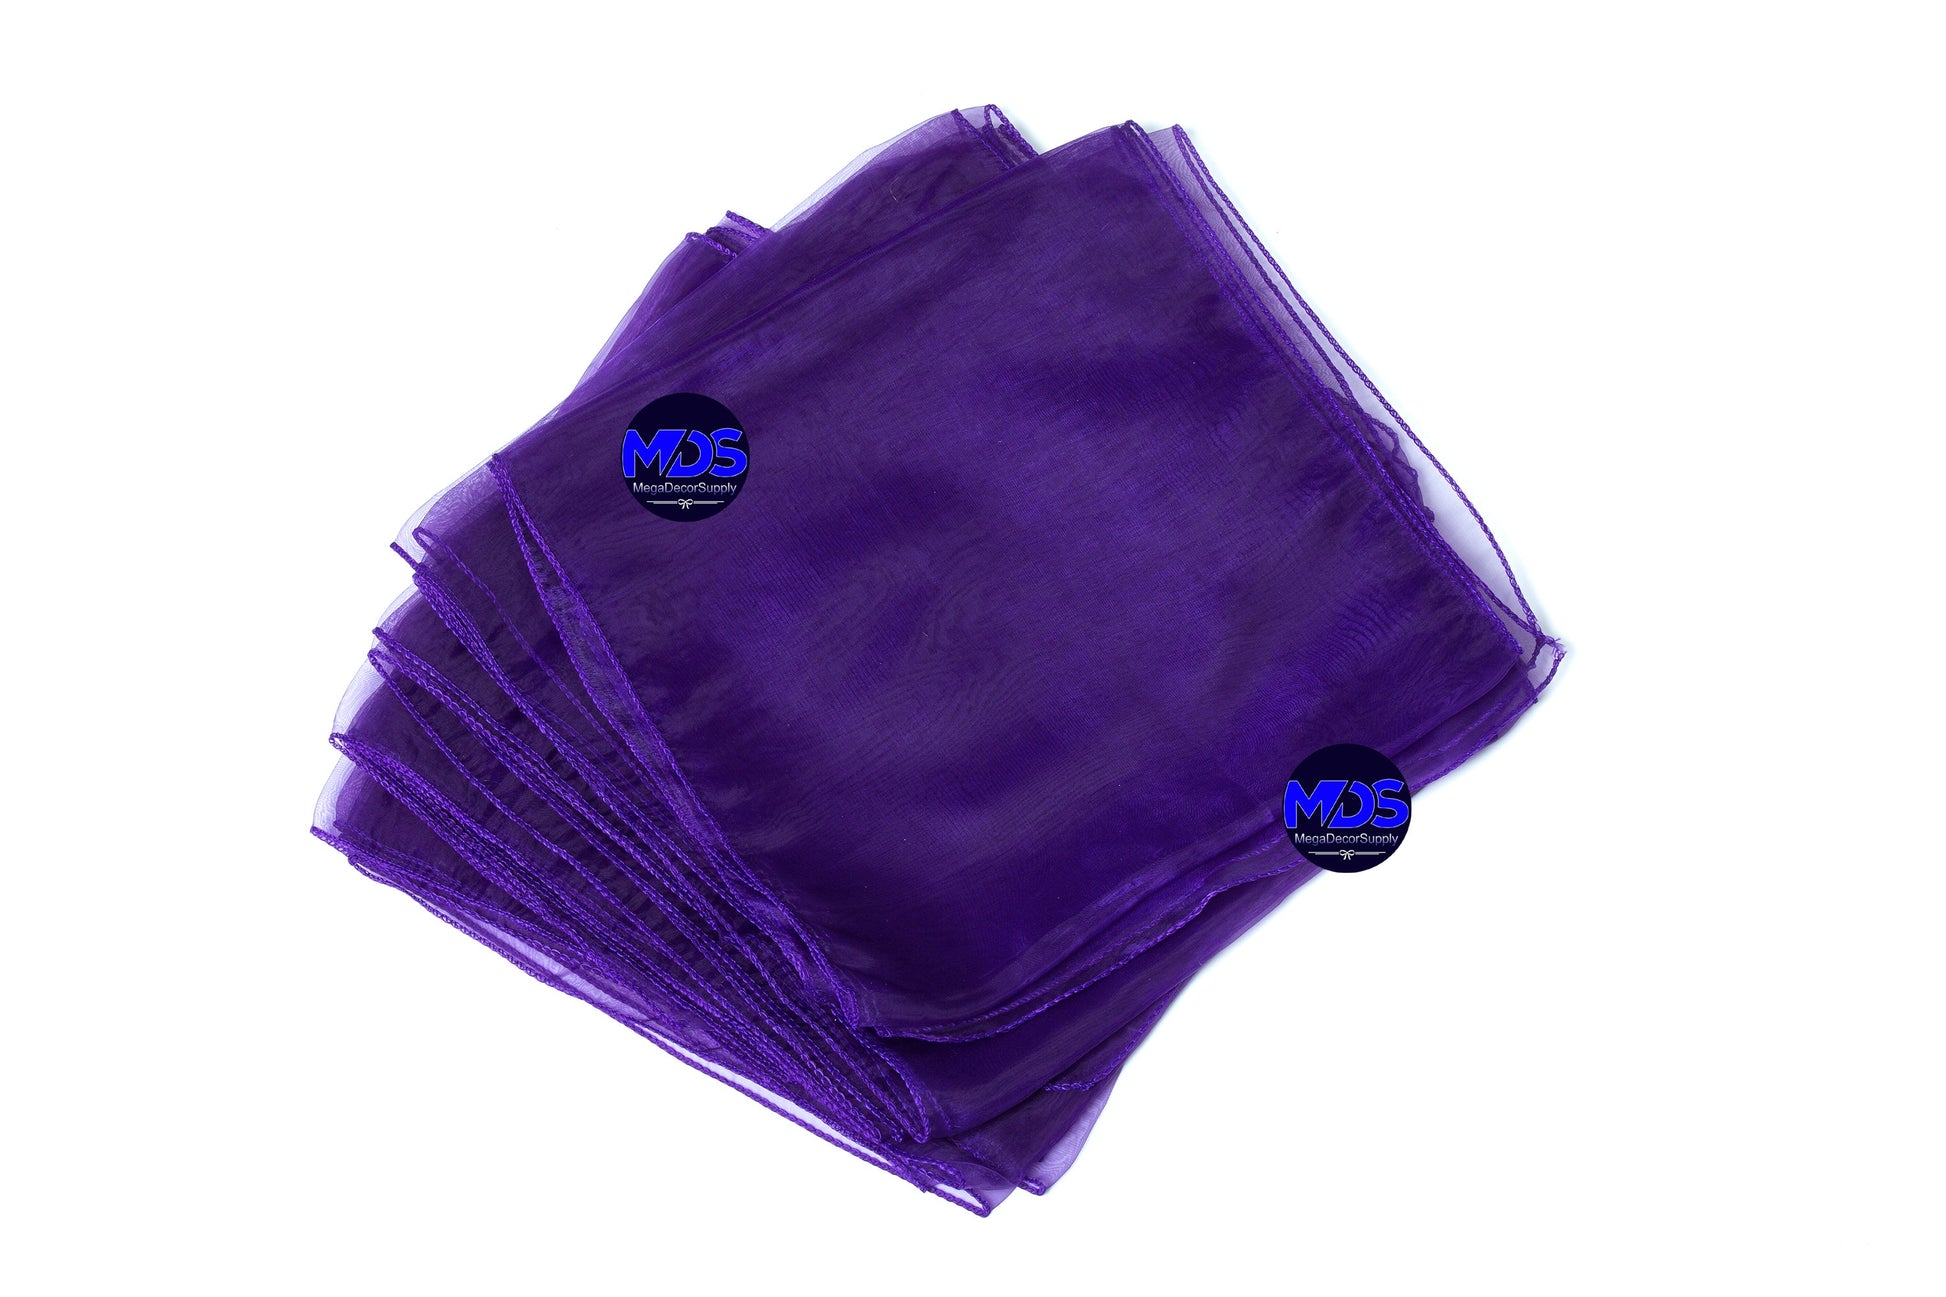 Cadbury Purple,92f2d7d8-f69f-4959-a09f-e4a316df4ac2